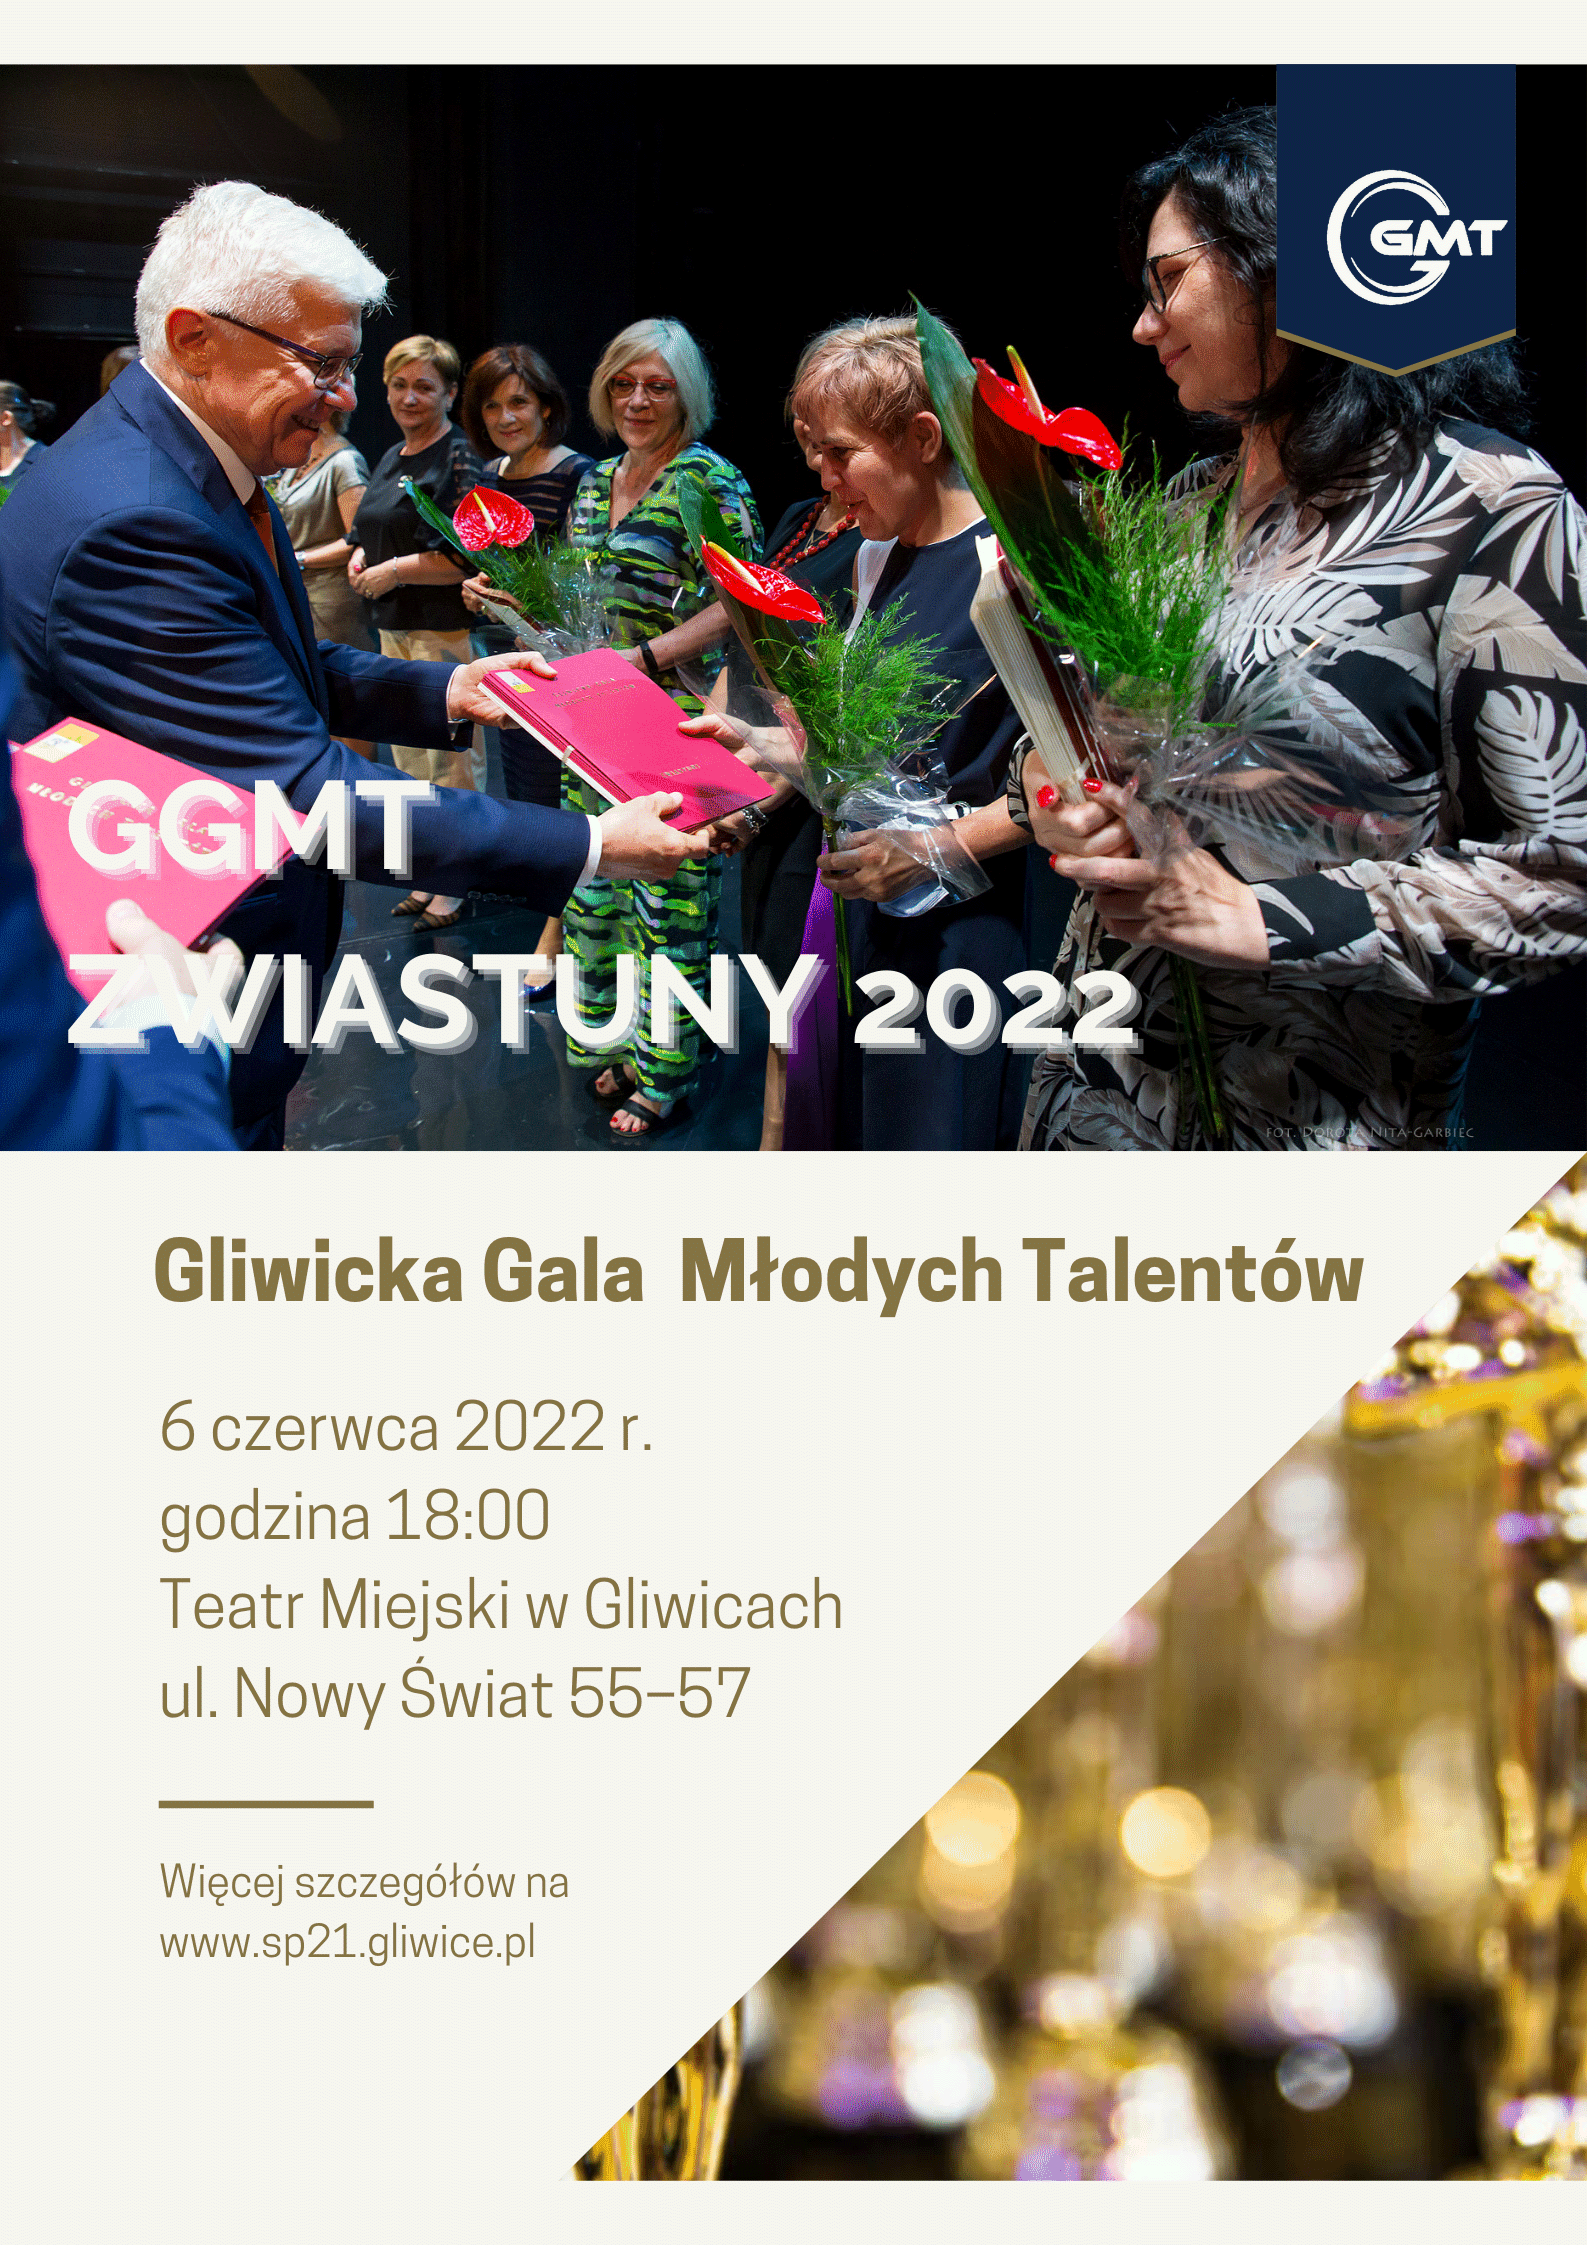 Gliwicka Gala Młodych Talentów Zwiastuny 2022